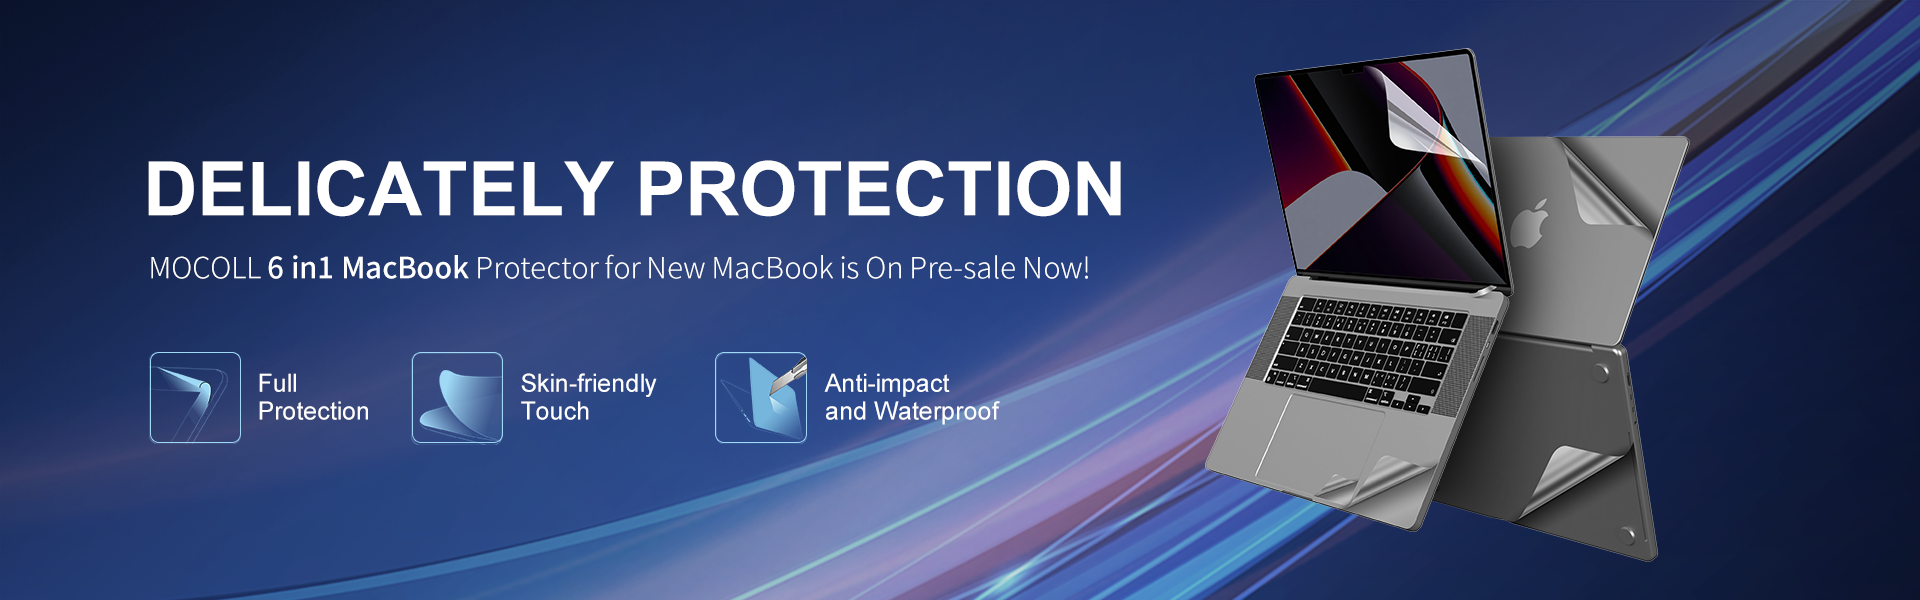 Der neue 6-in-1-Macbook-Schutz ist jetzt im Angebot!